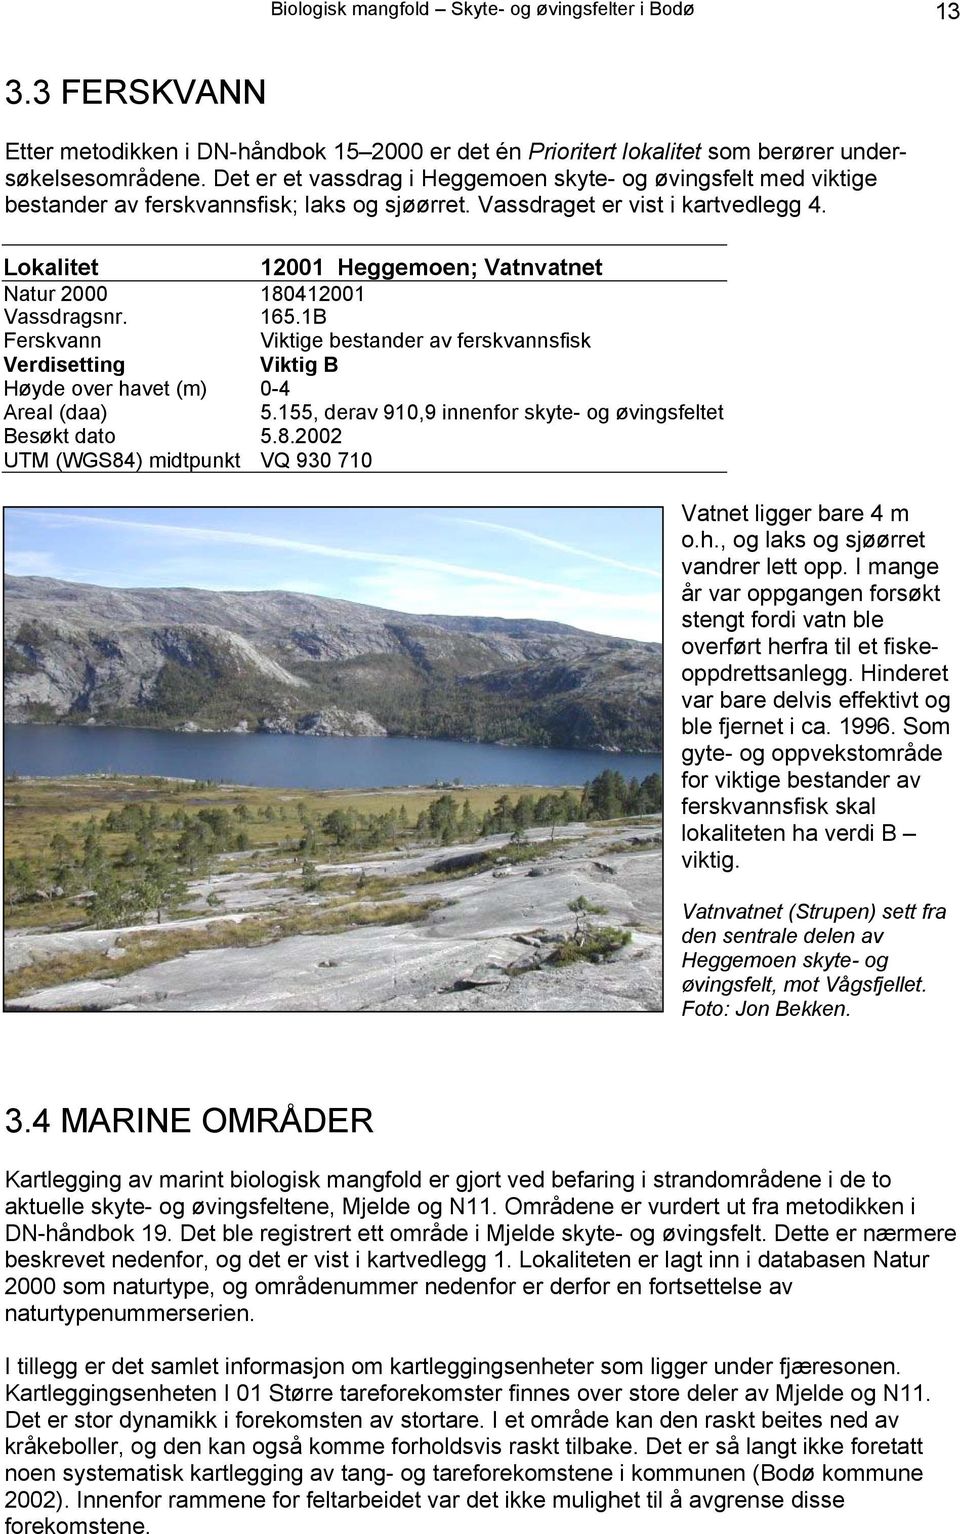 Lokalitet 12001 Heggemoen; Vatnvatnet Natur 2000 180412001 Vassdragsnr. 165.1B Ferskvann Viktige bestander av ferskvannsfisk Verdisetting Viktig B Høyde over havet (m) 0-4 Areal (daa) 5.